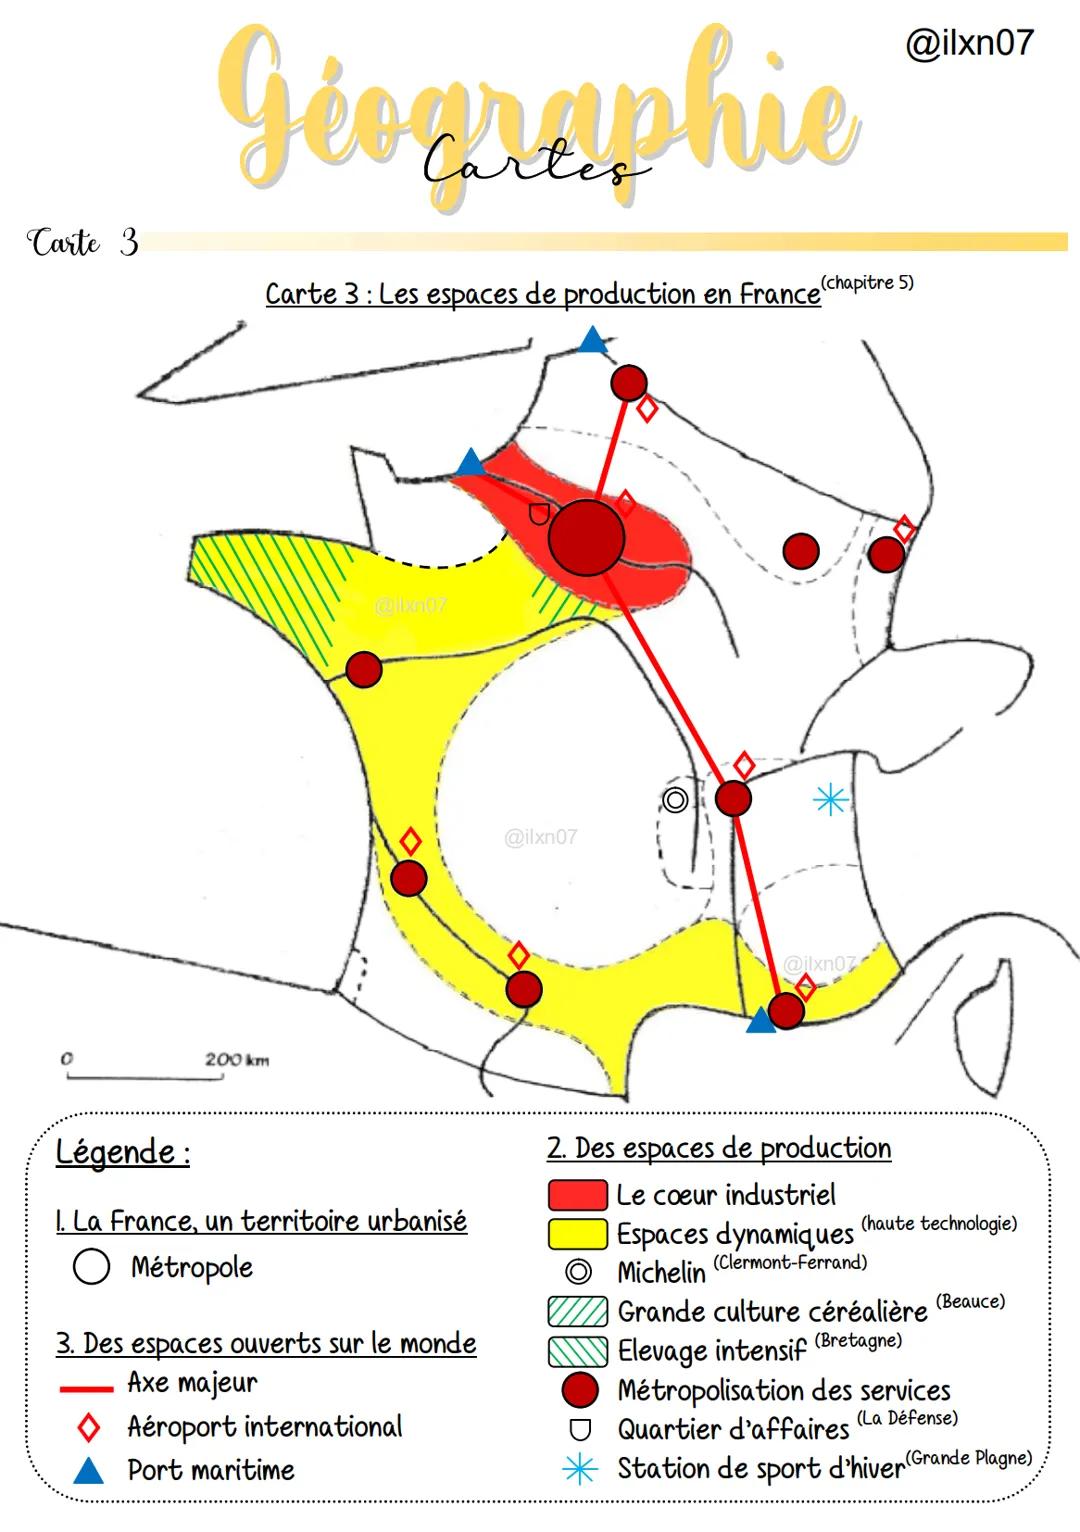 Carte 3
0
Géographie
Carte 3 : Les espaces de production en France (chapitre 5)
200 km
@llxn07
Légende :
1. La France, un territoire urbanis